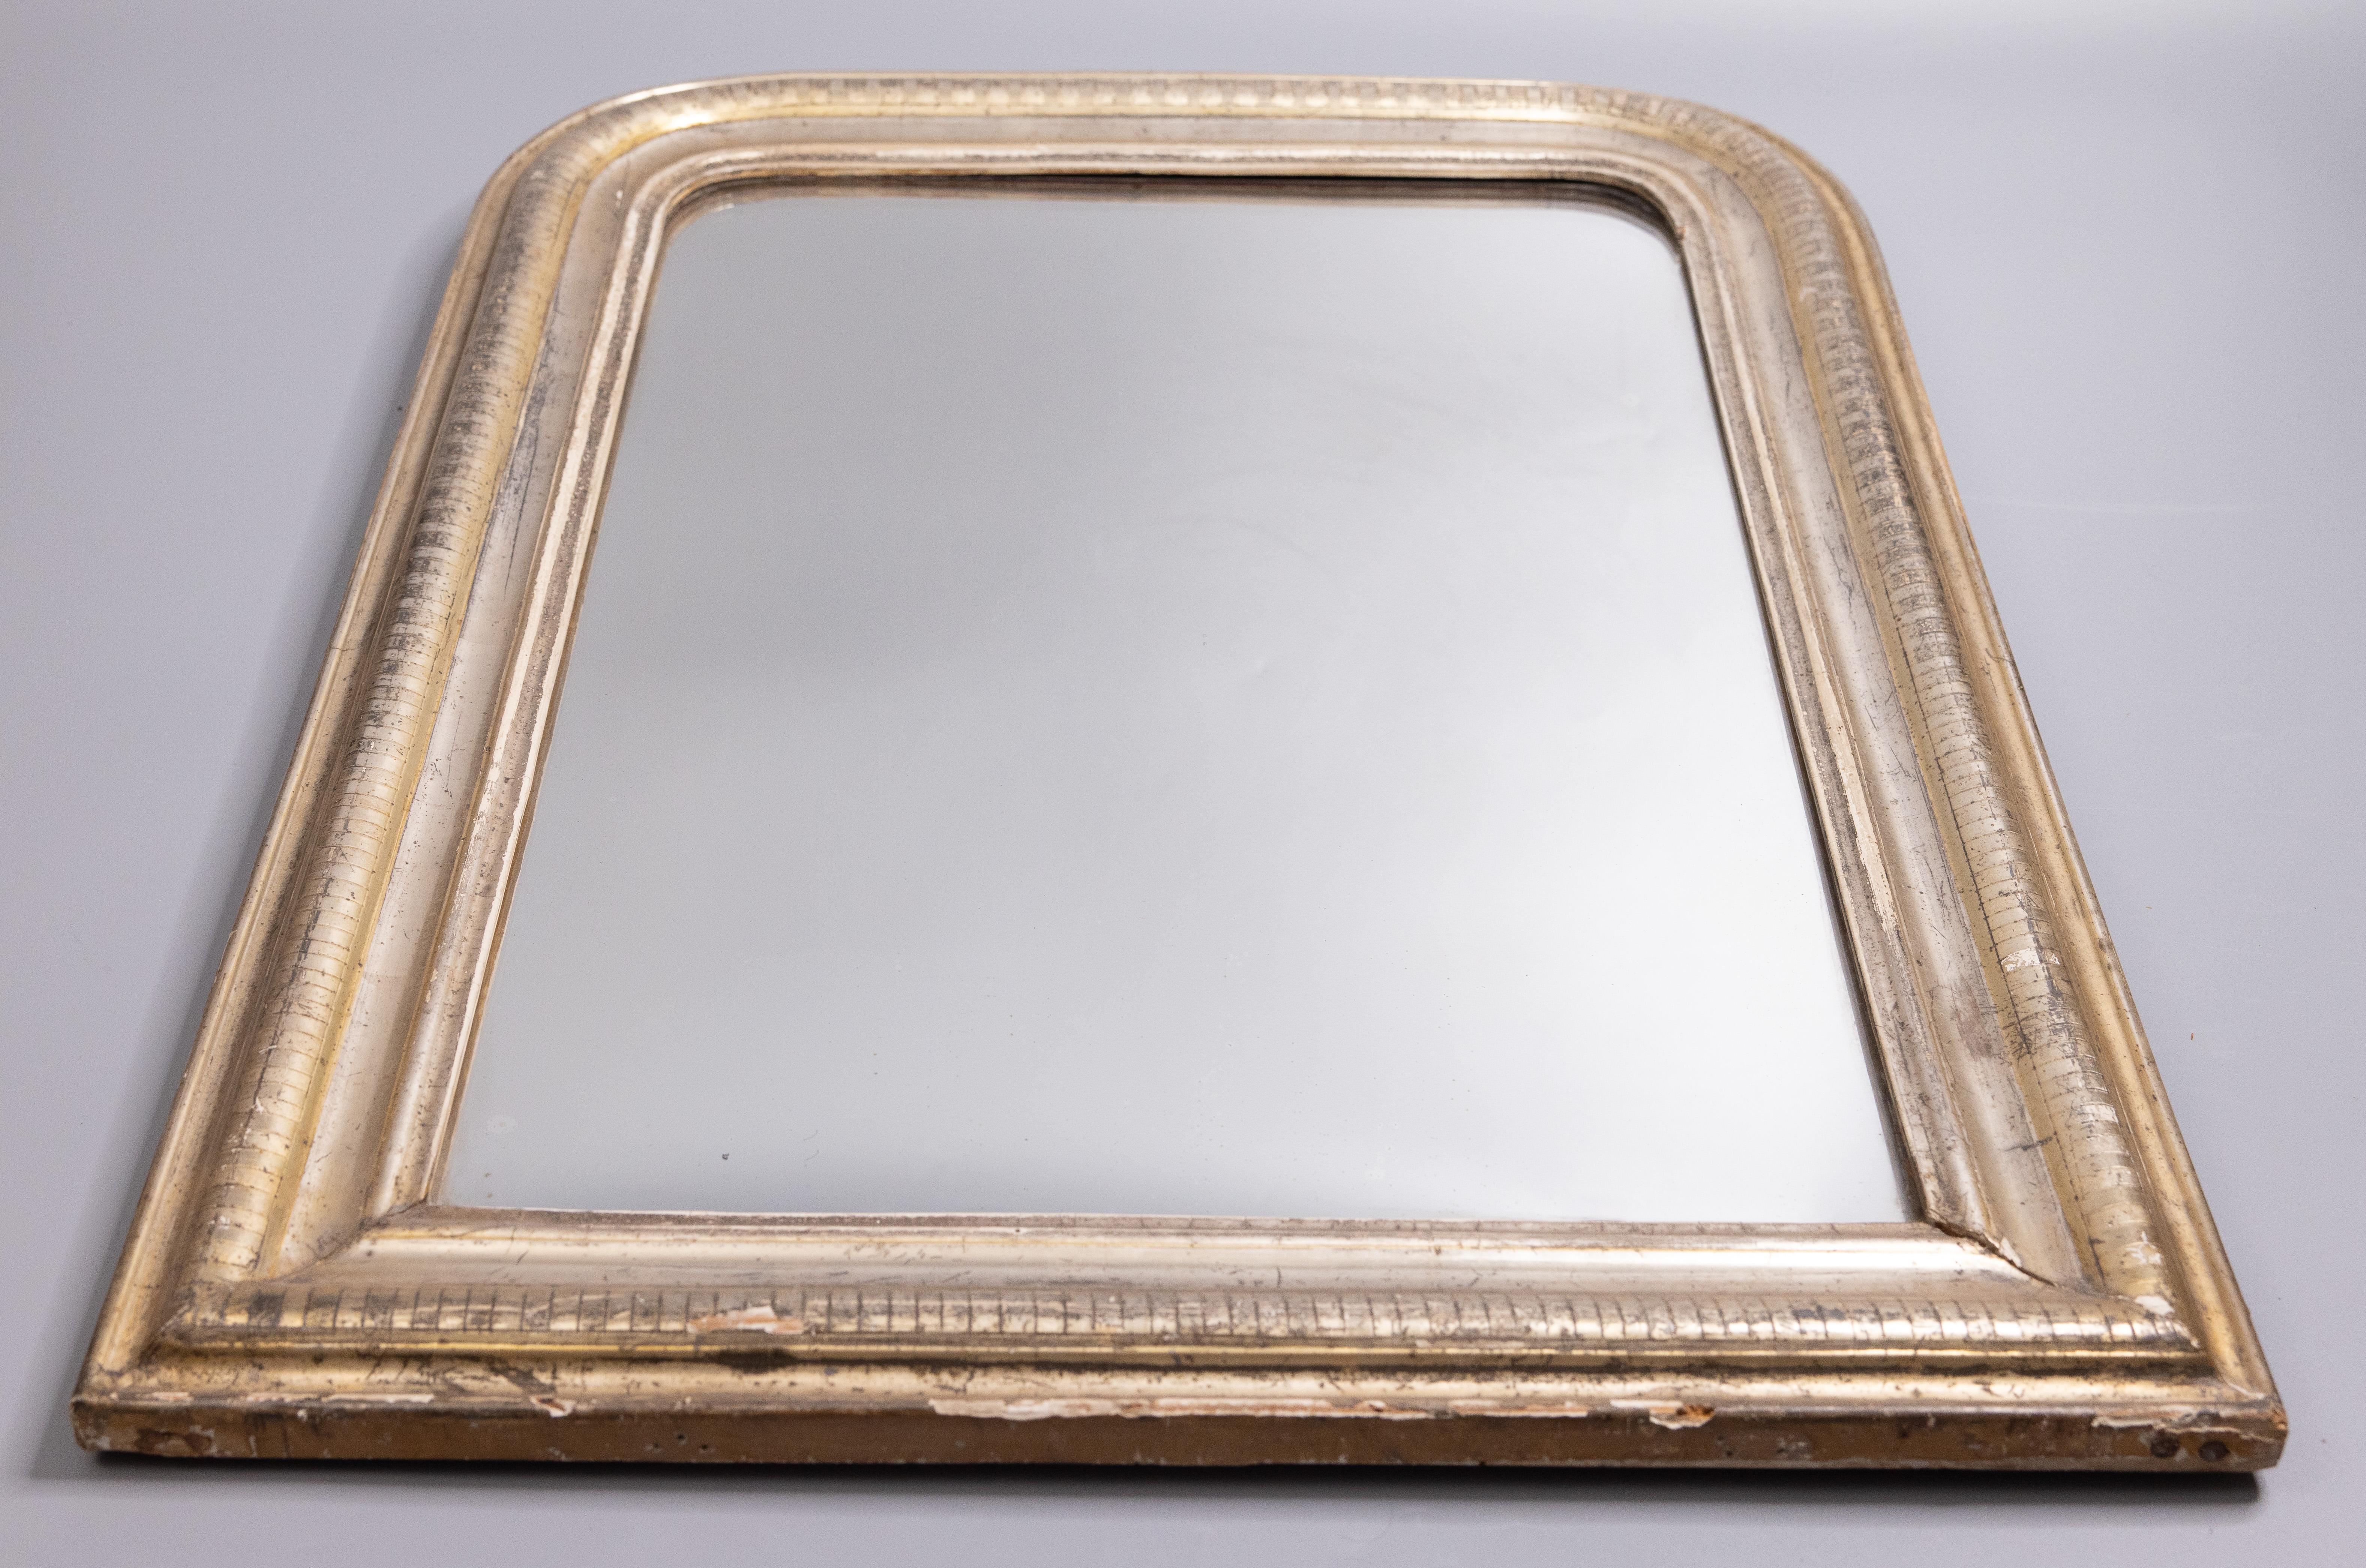 Elegant miroir Louis Philippe en bois doré à la feuille d'argent, vers 1860. Ce beau miroir présente un ravissant motif géométrique rayé dans une belle patine argentée et conserve la glace et le support en bois d'origine. Il s'agit d'un magnifique